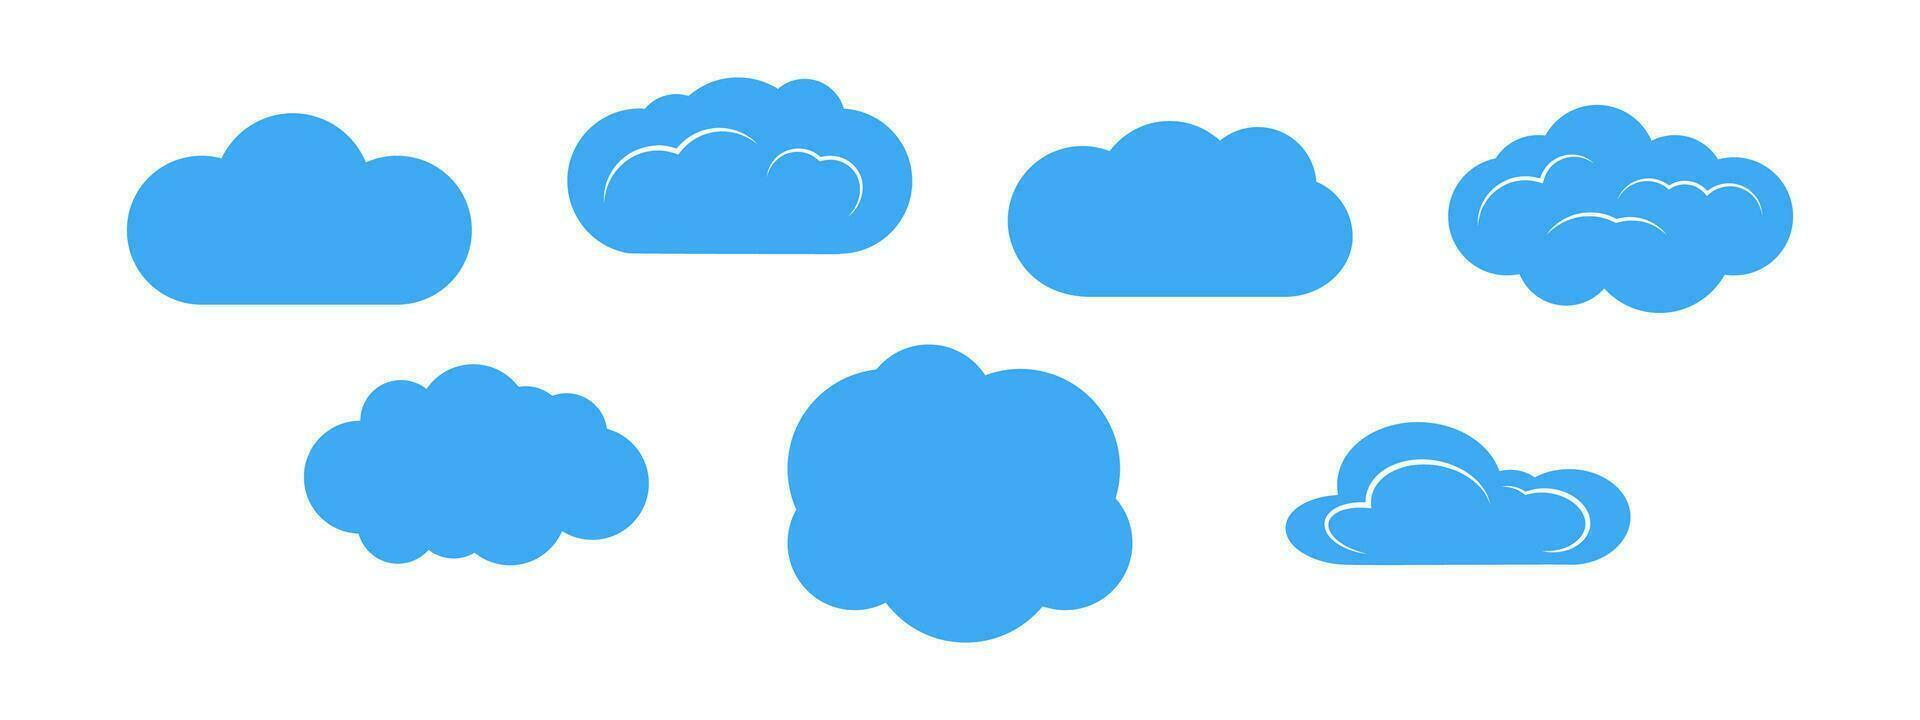 uppsättning av sju blå moln på vit bakgrund. vektor illustration.